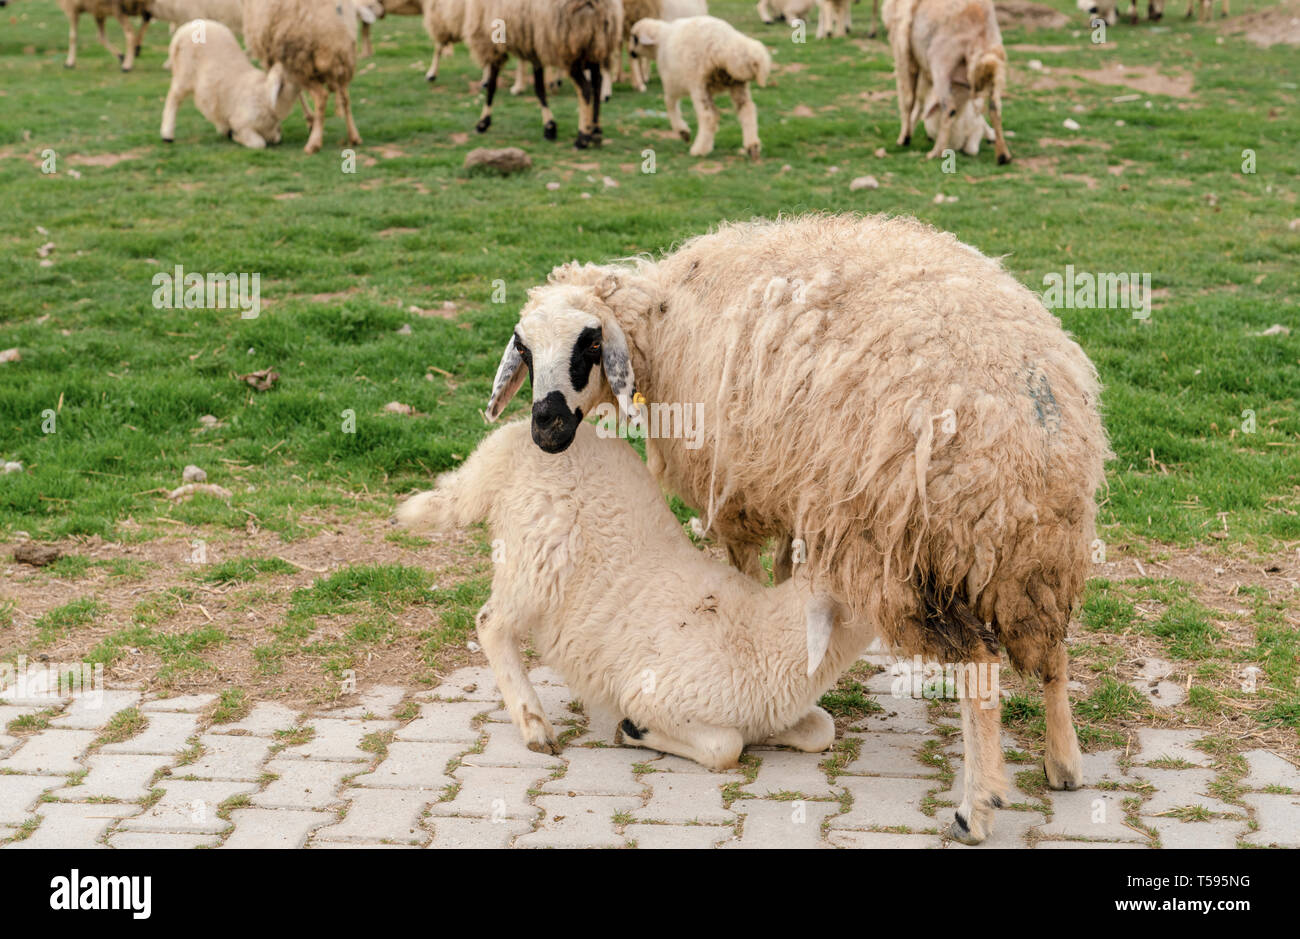 Abbacchio succhiare il latte dalla mammella della madre pecora su erba con allevamento di ovini in background, Konya, Turchia Foto Stock